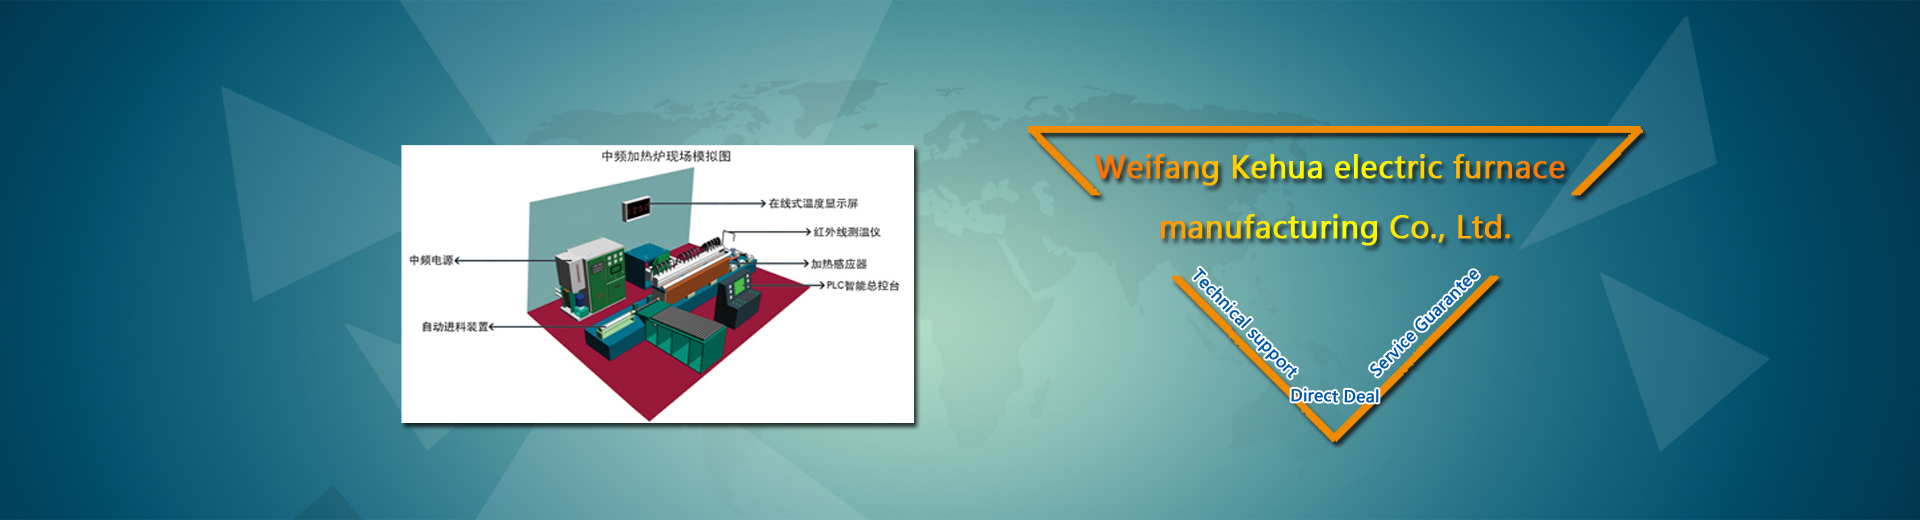 Weifang Kehua electric furnace manufacturing